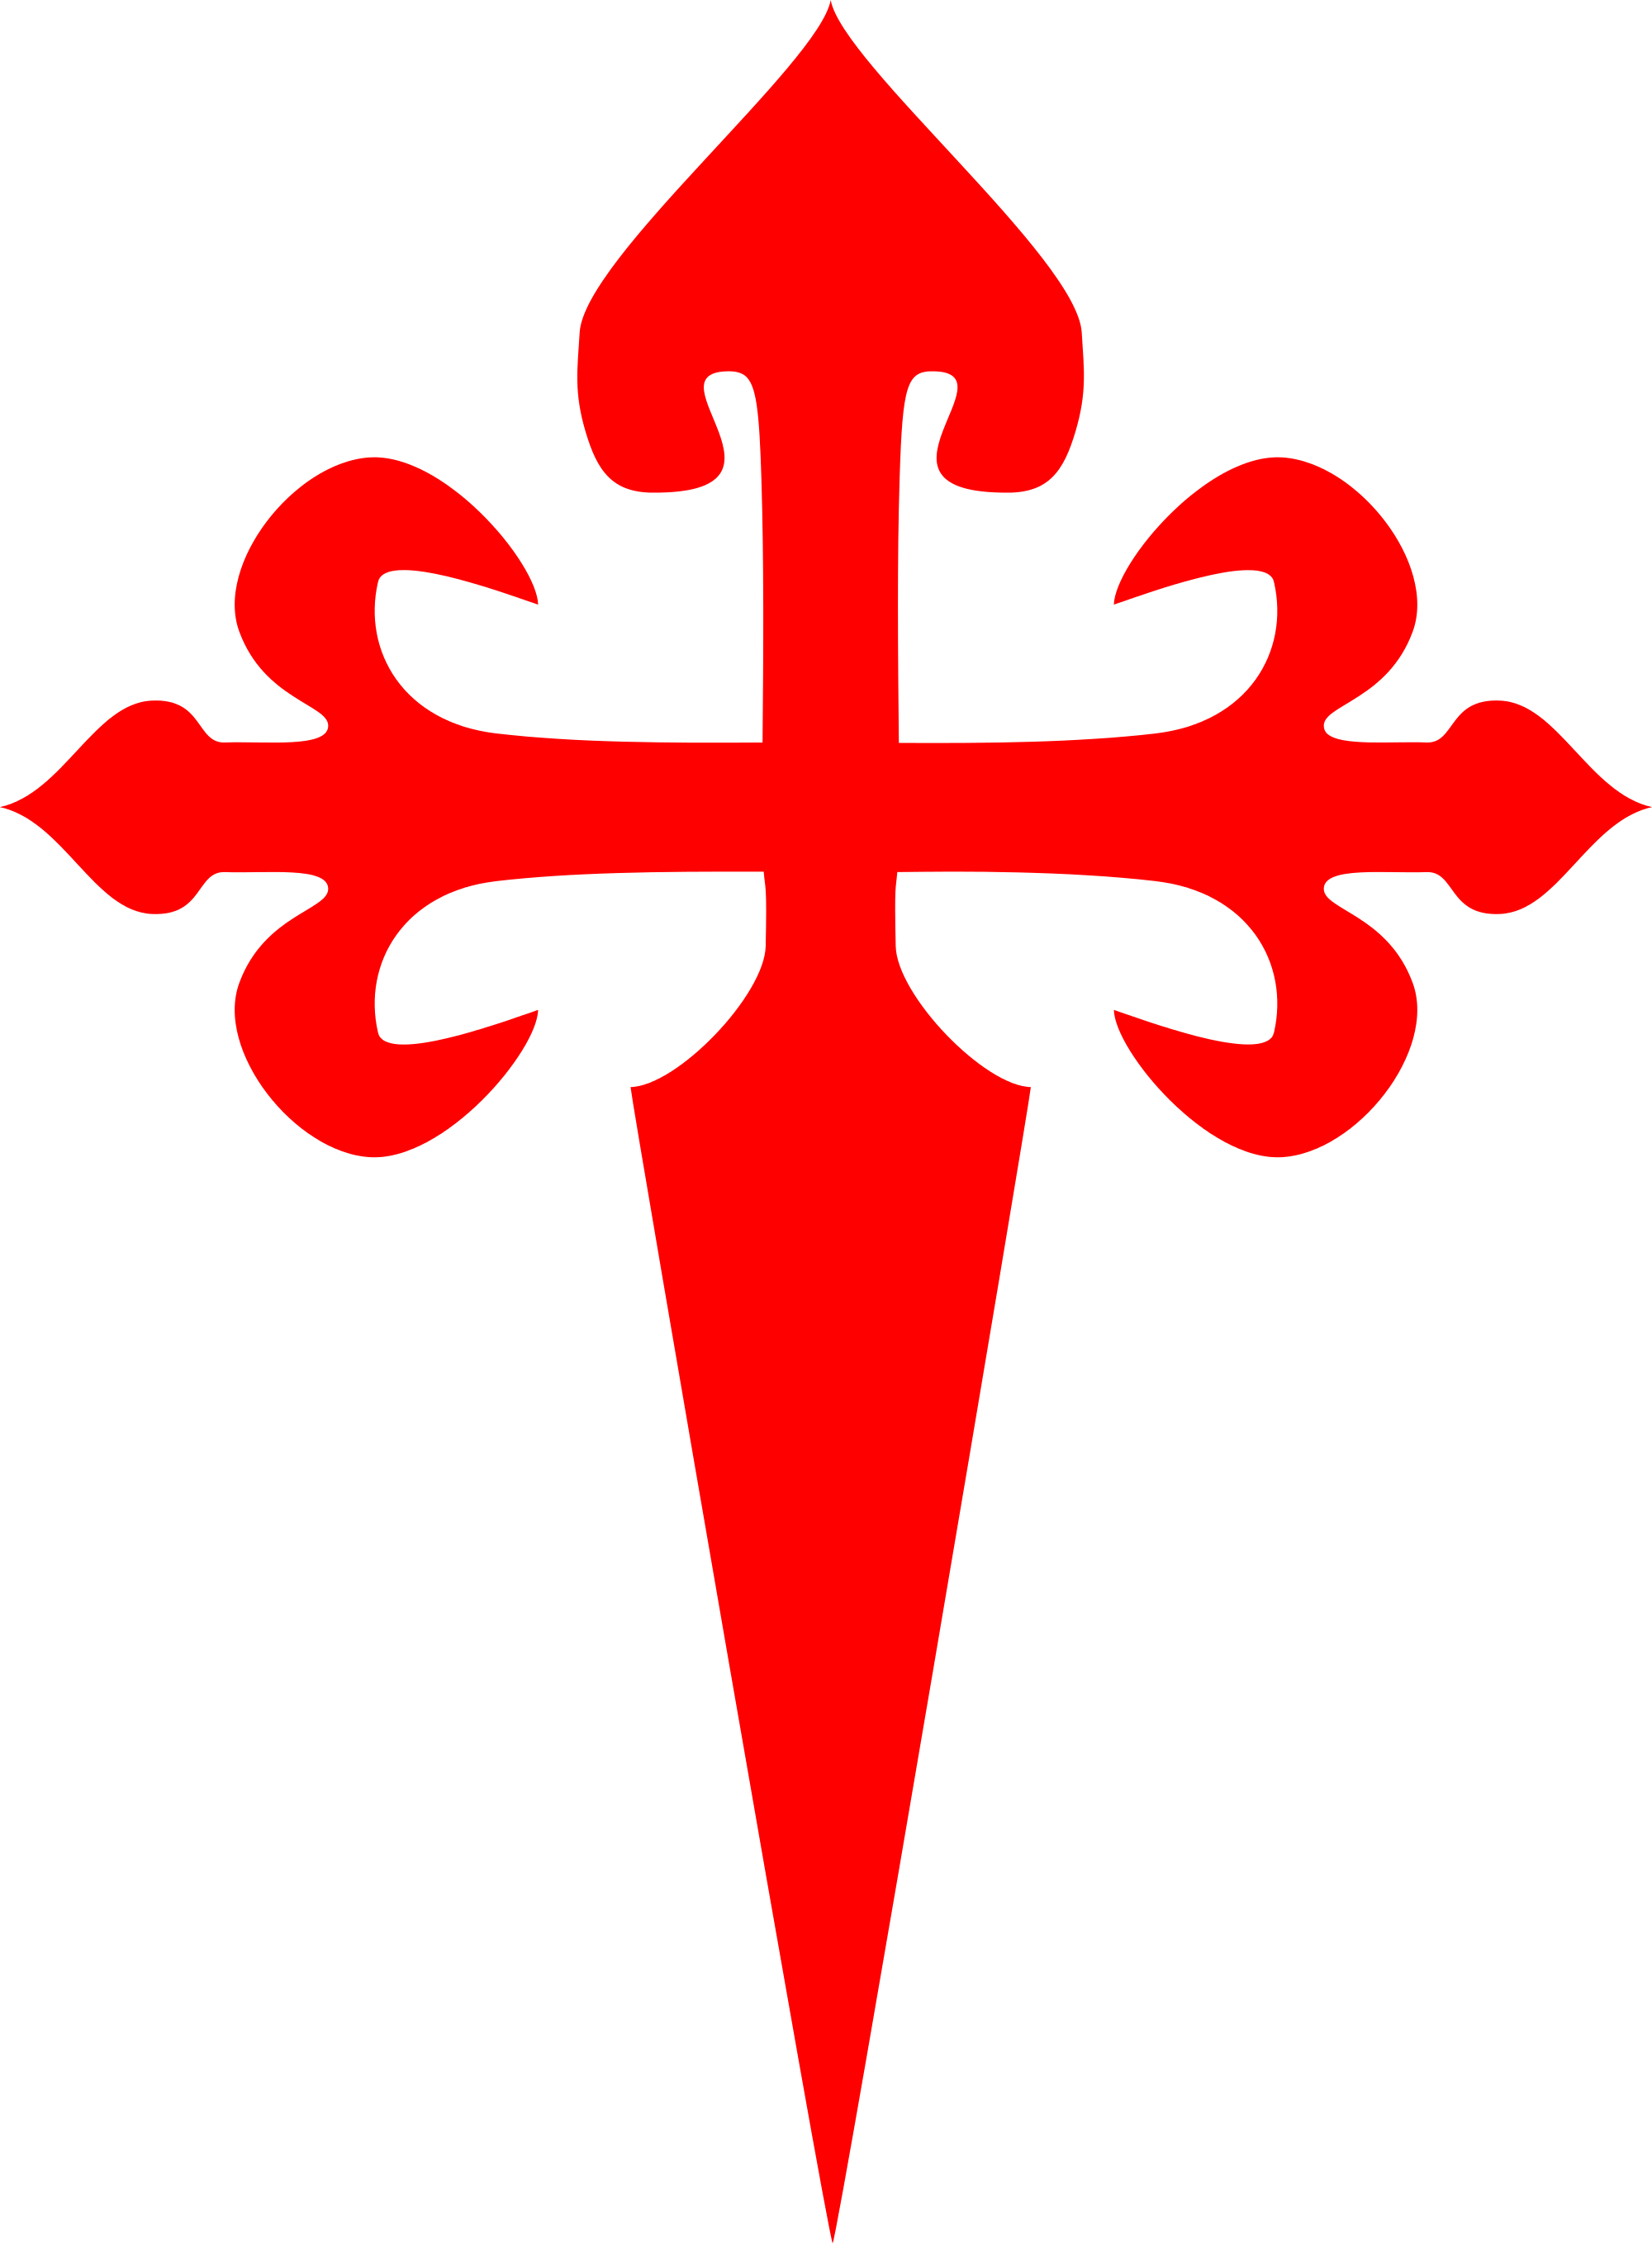 Cross Of Saint James - Cross Of Saint James (2000x2717)